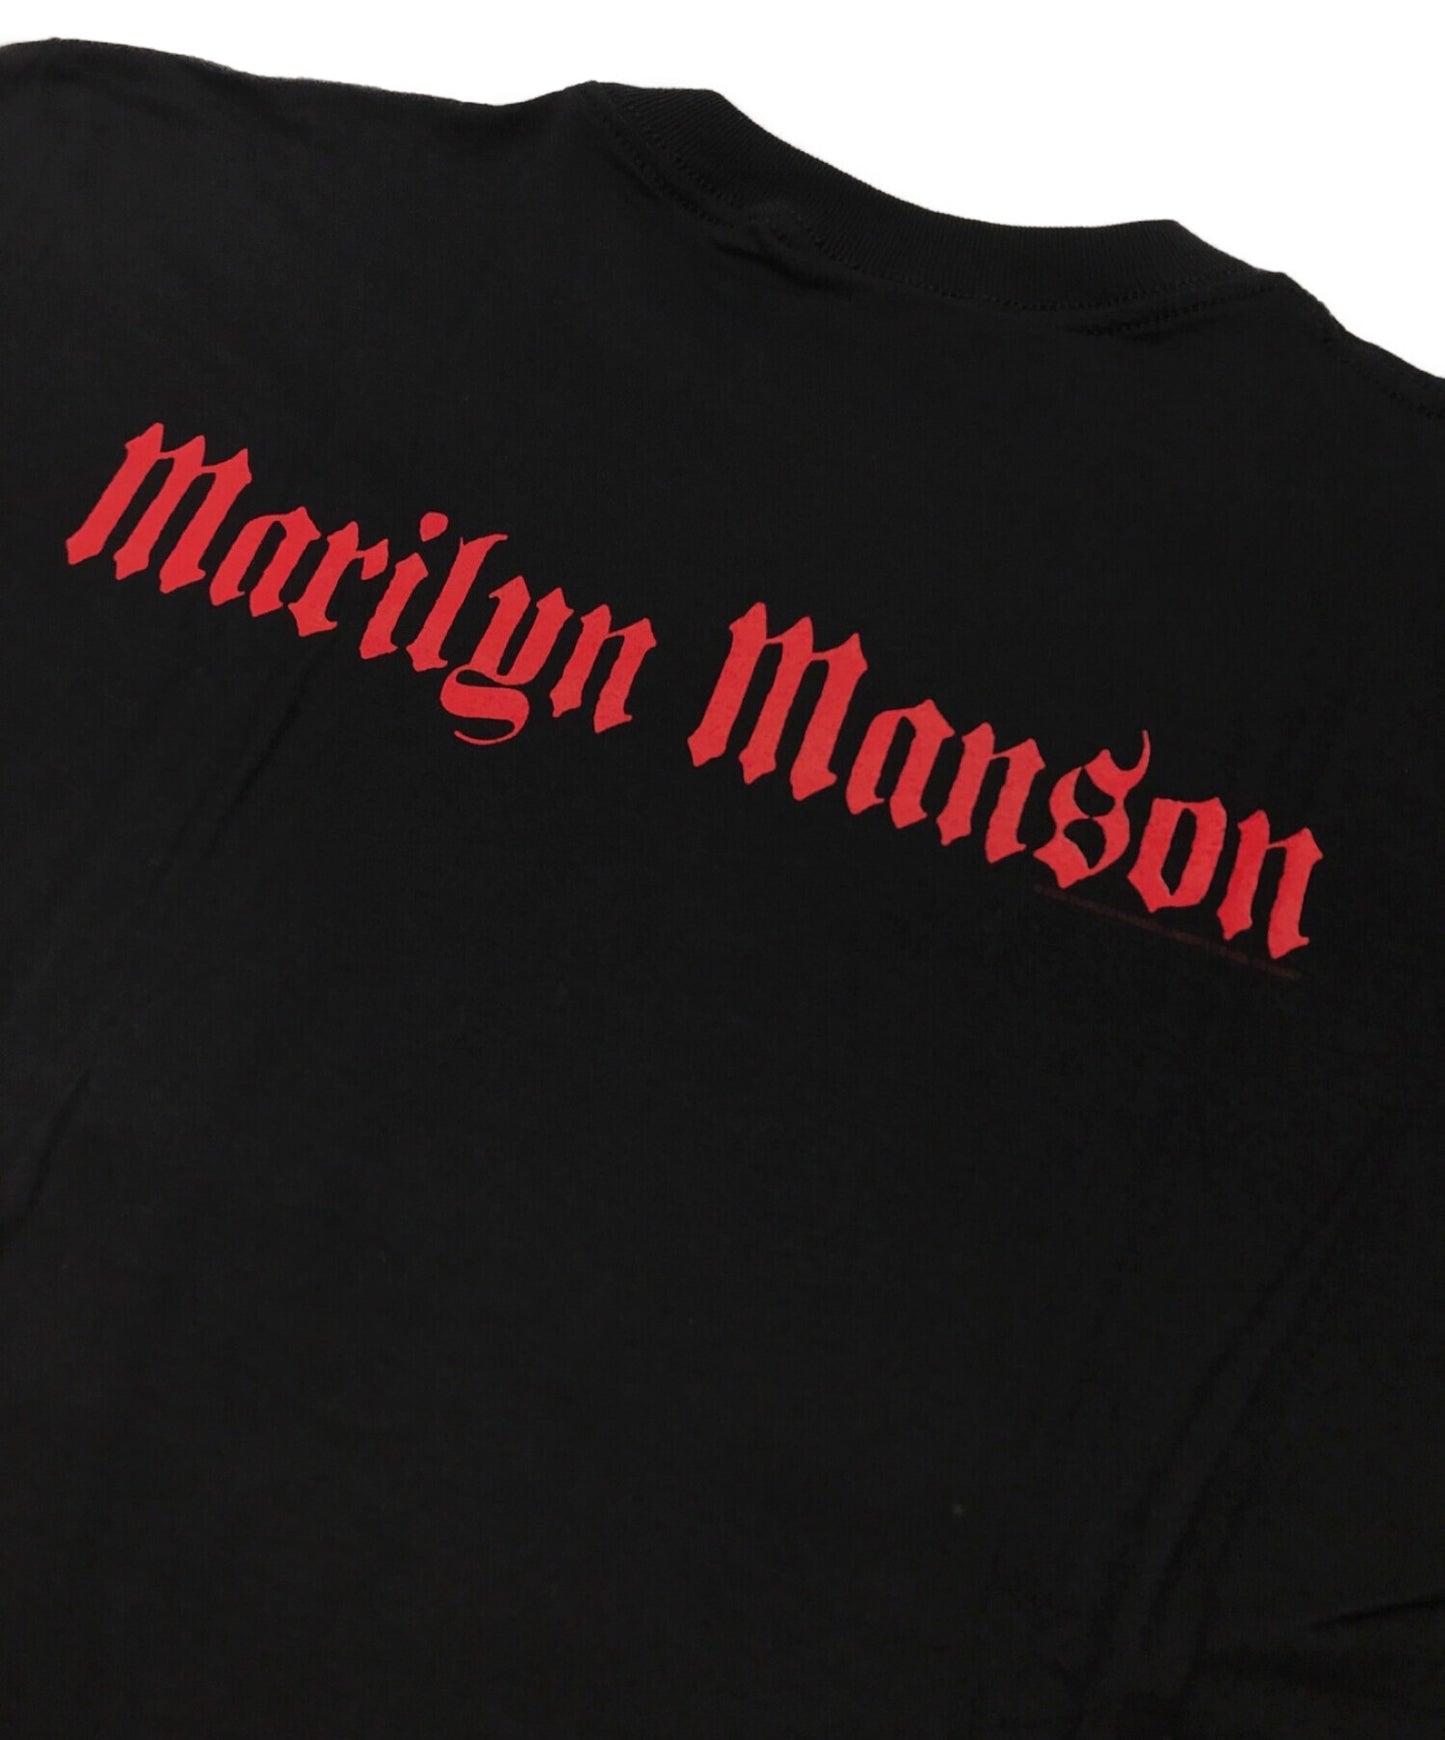 เสื้อยืด Marilyn Manson 2000